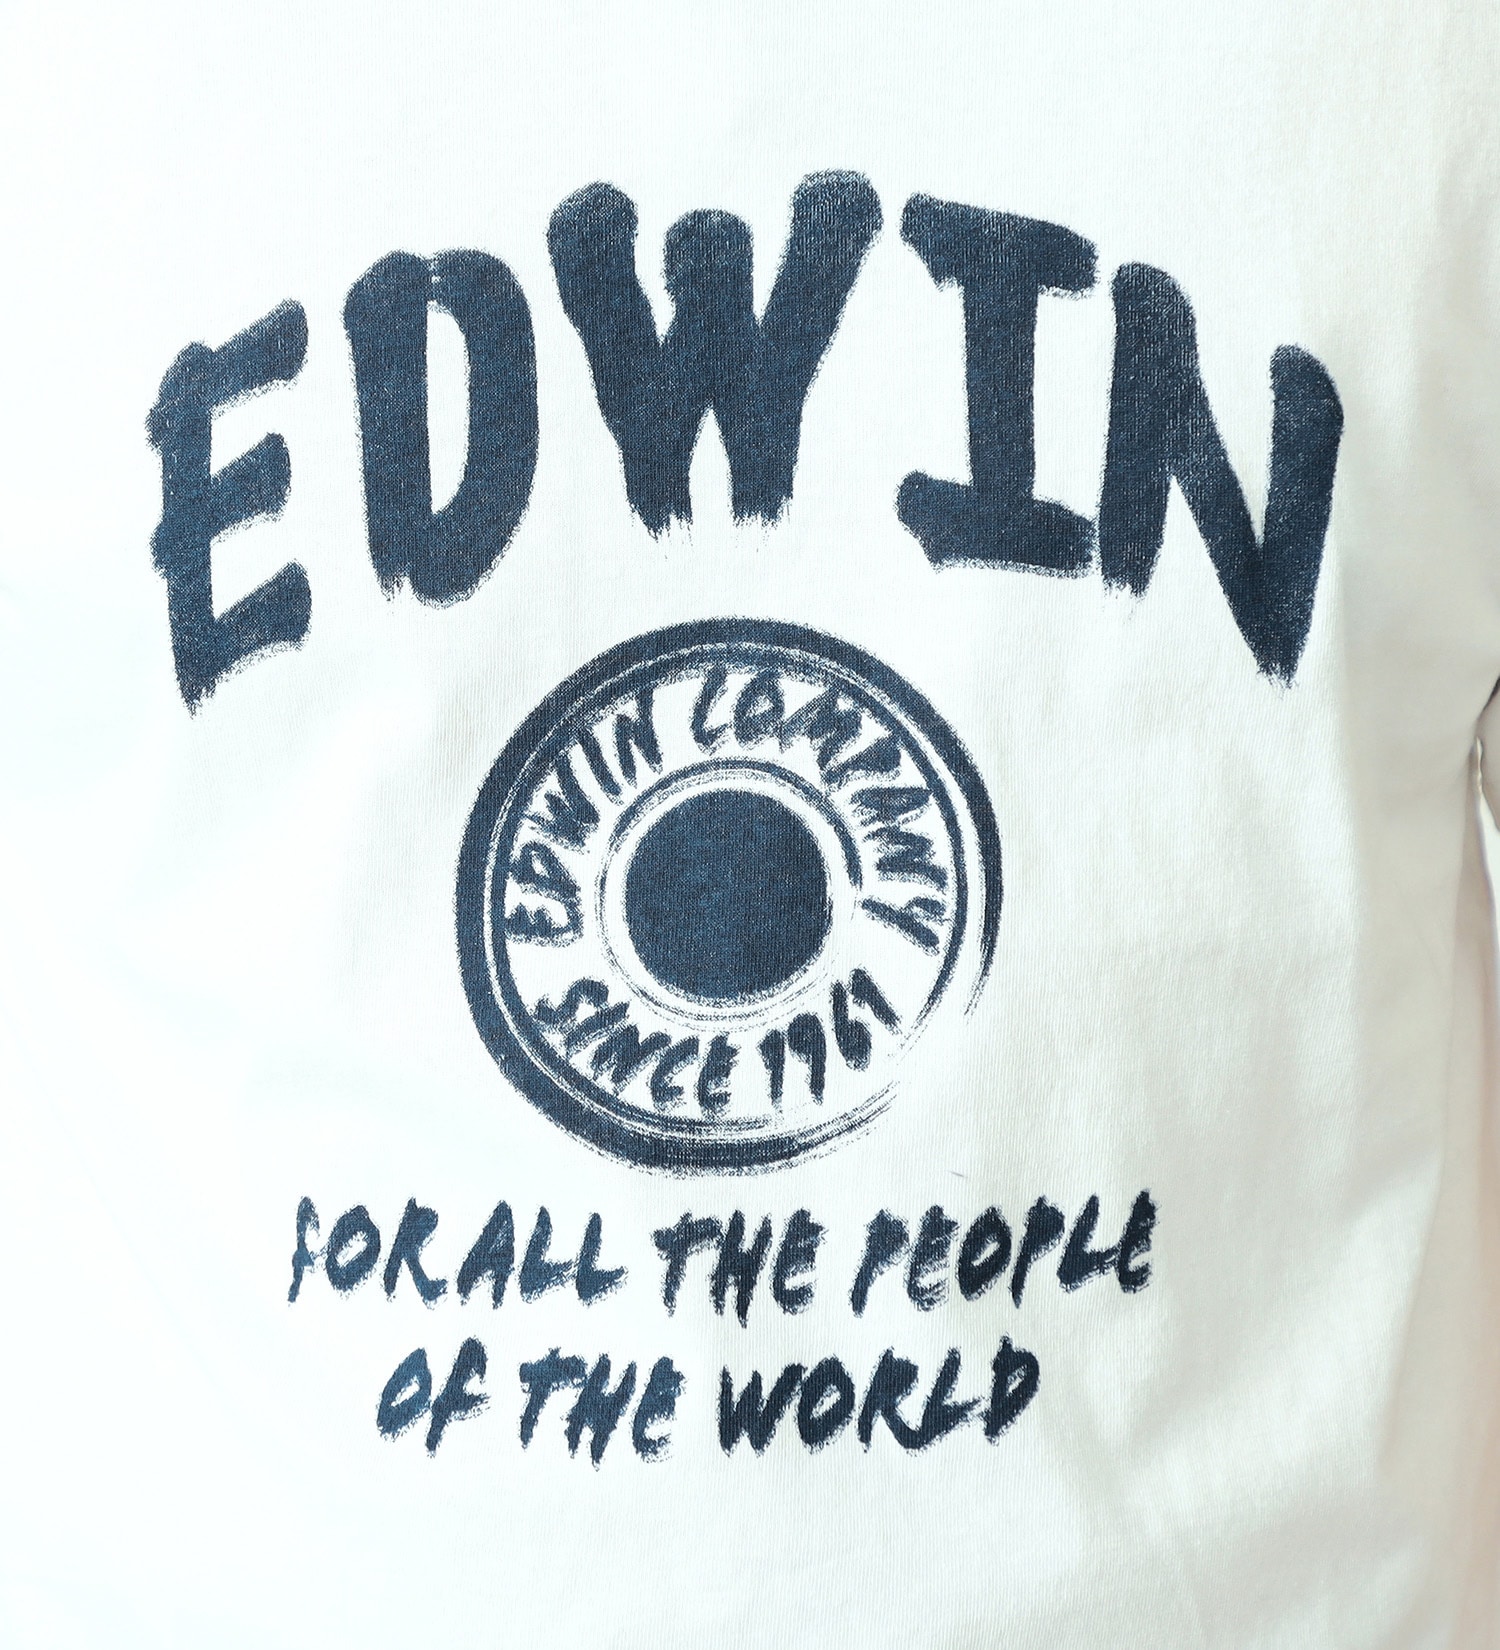 EDWIN(エドウイン)のロゴプリント半袖Tシャツ【アウトレット店舗・WEB限定】|トップス/Tシャツ/カットソー/メンズ|ホワイト